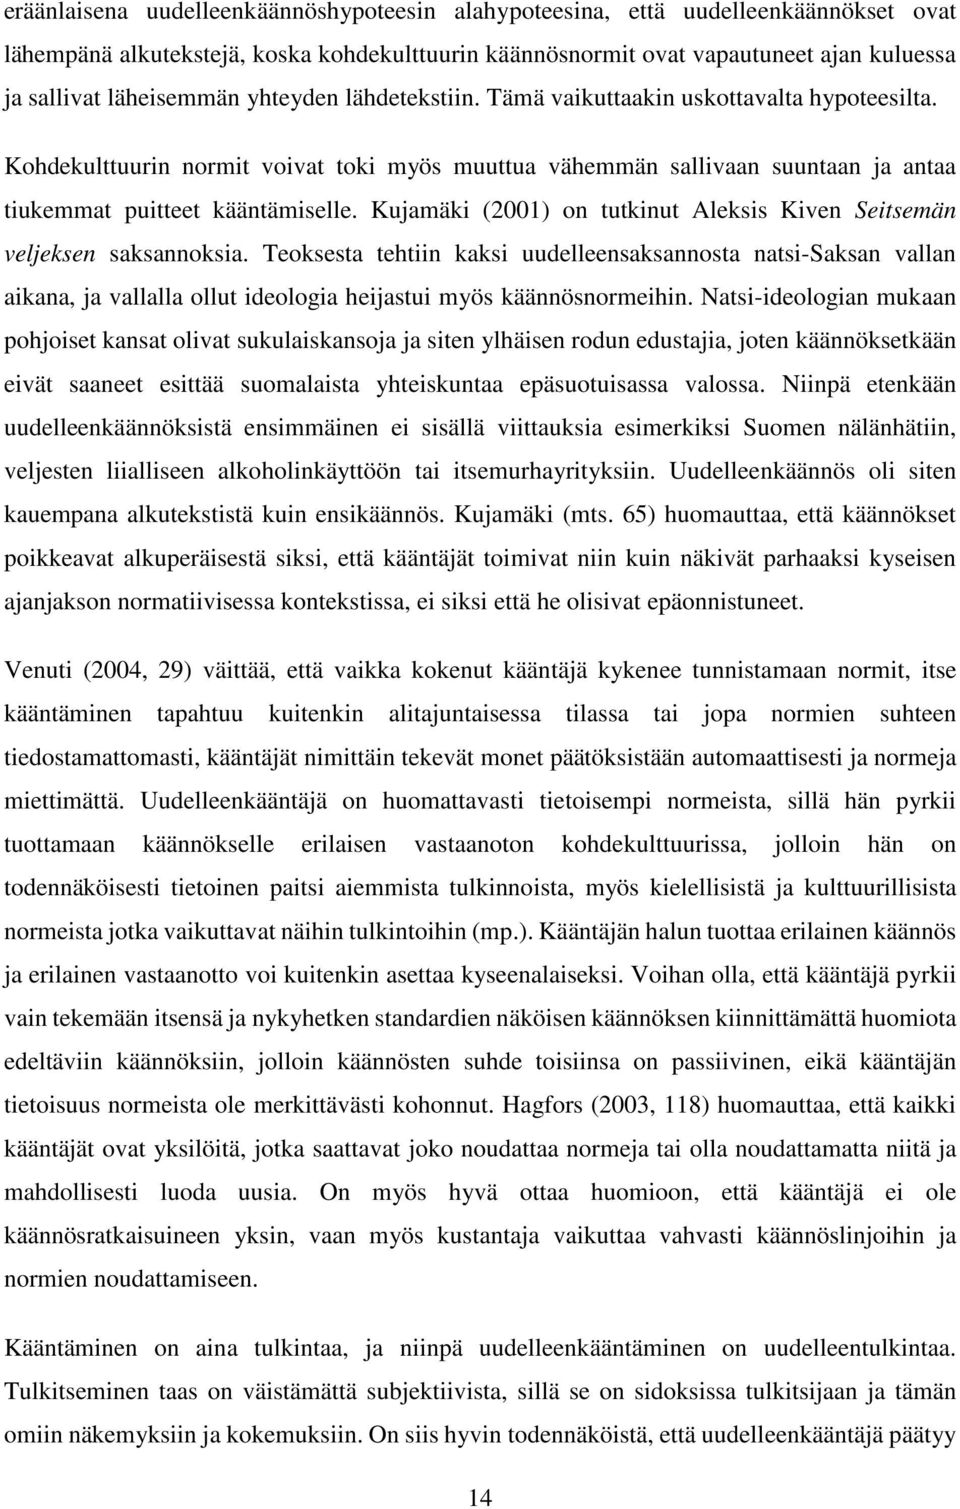 Kujamäki (2001) on tutkinut Aleksis Kiven Seitsemän veljeksen saksannoksia.